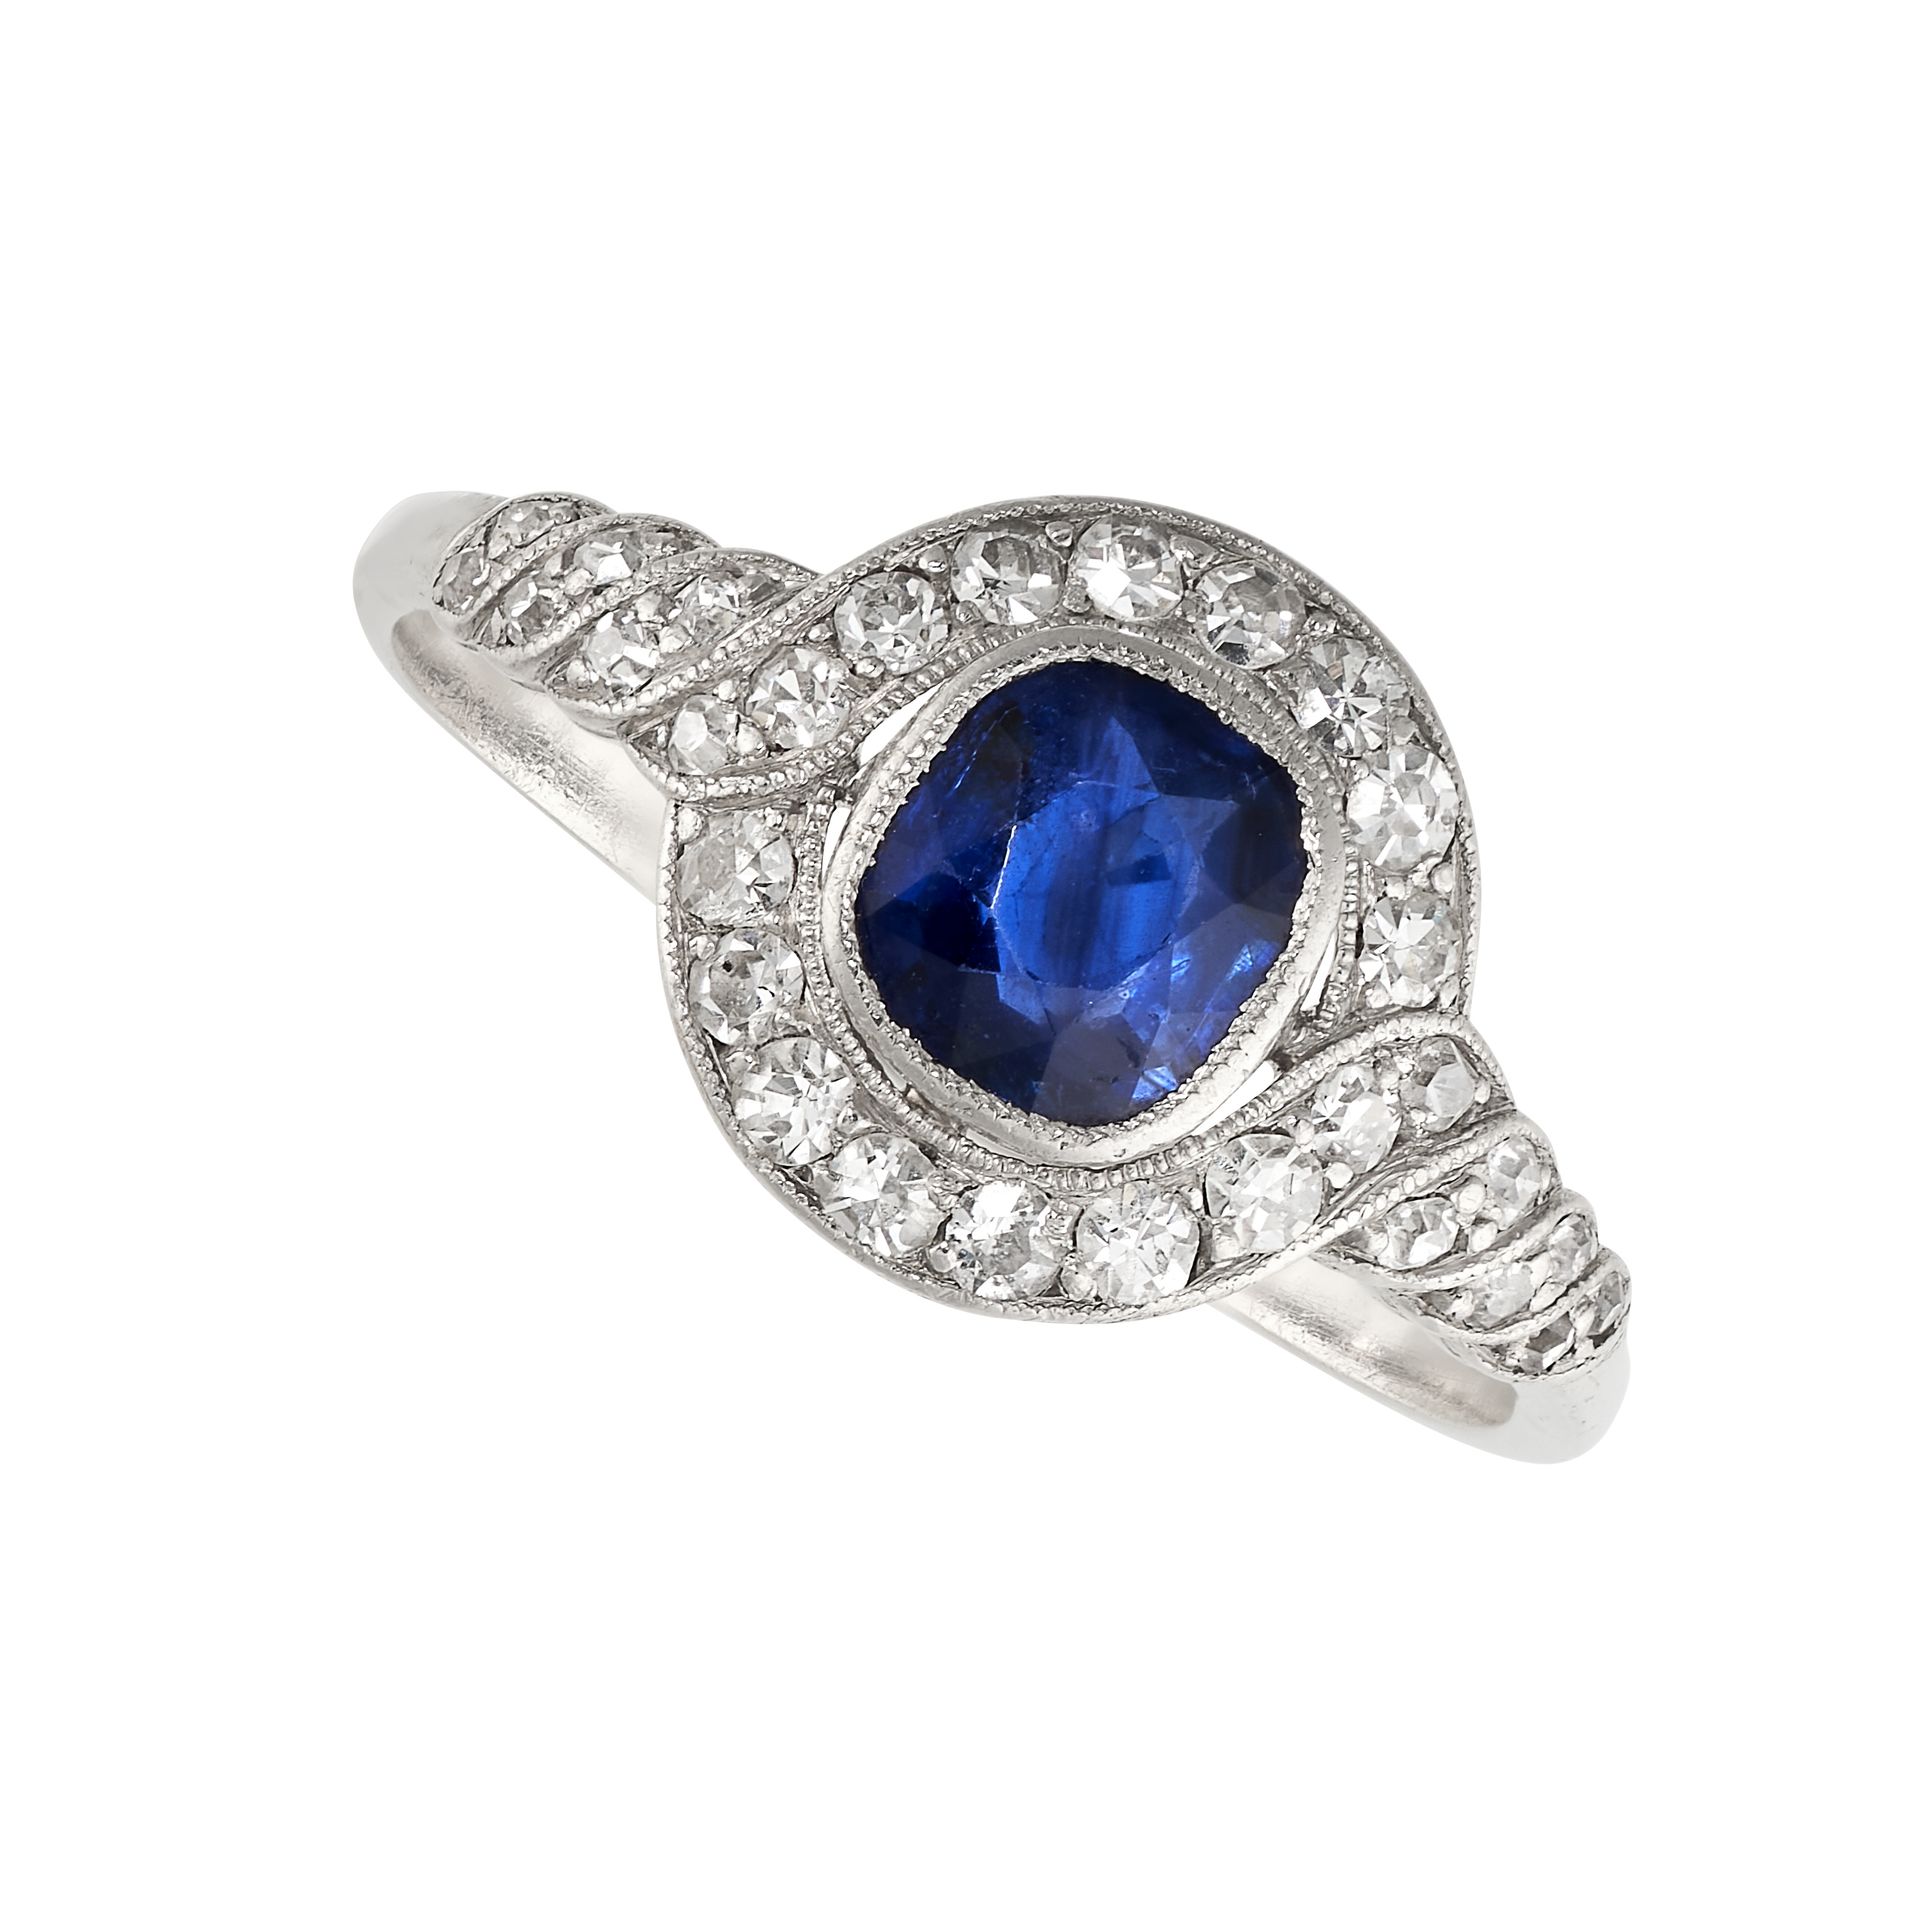 Null 无保留 - 18K白金蓝宝石和钻石礼服戒指，镶有1.04克拉的枕形切割蓝色蓝宝石，边框为单颗切割钻石，无化验标记，尺寸为R/8.5，4.3克。